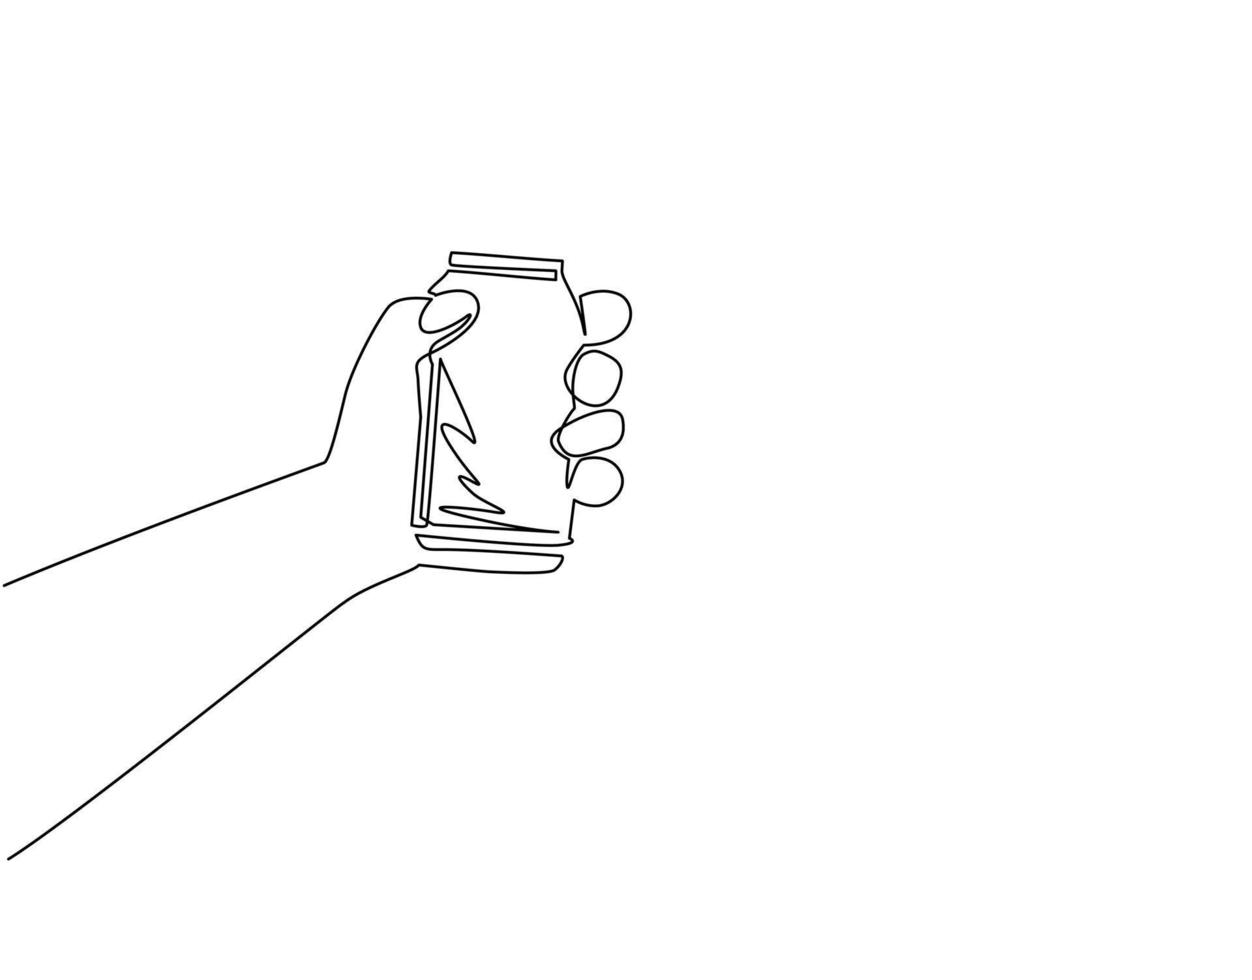 einzelne einstrichzeichnungshand, die getränkedose hält. männliche Hand, die Aluminiumdose auf weißem Hintergrund hält. für Restaurant- oder Café-Getränkekarte. moderne grafische vektorillustration des ununterbrochenen zeichnendesigns vektor